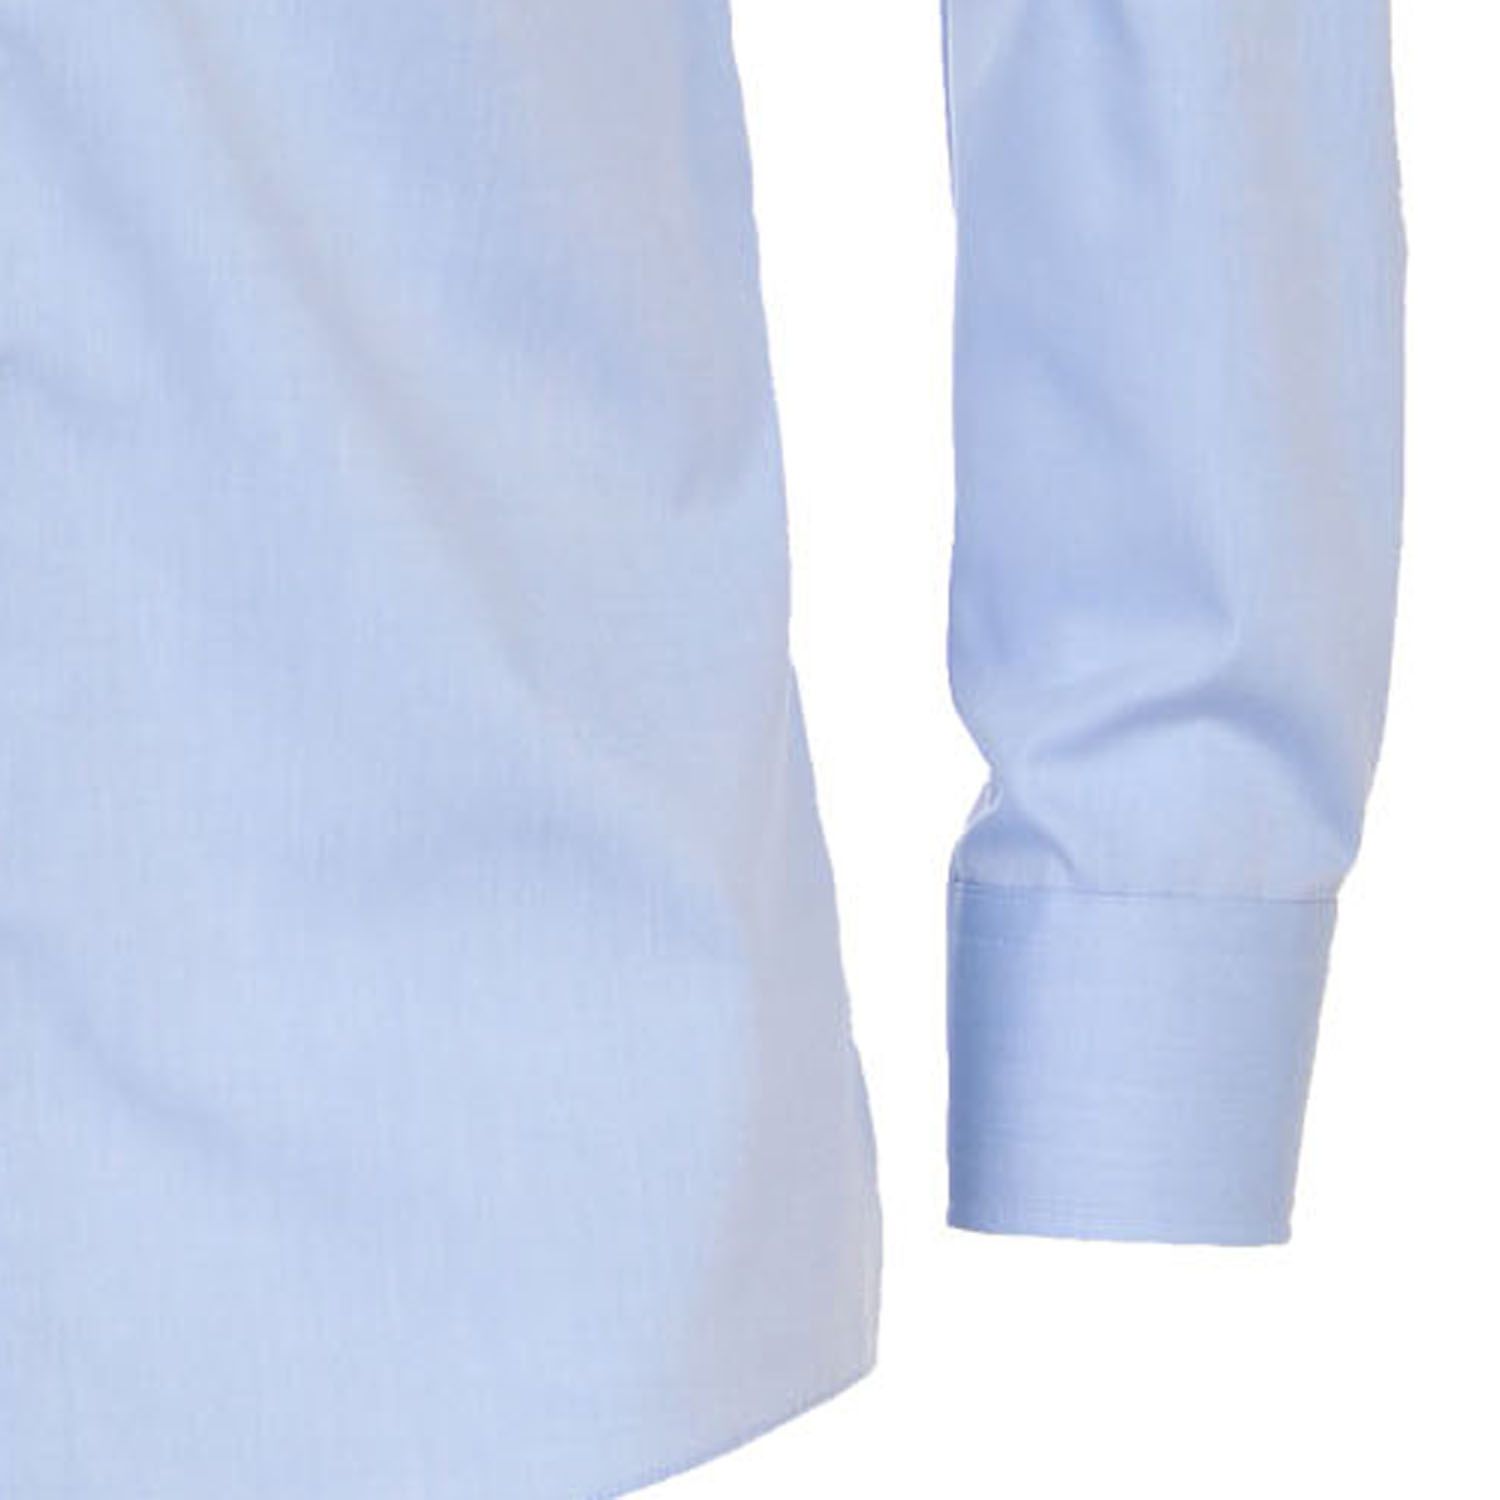 Chemise bleu clair de Casa Moda grandes tailles jusqu'au 7XL